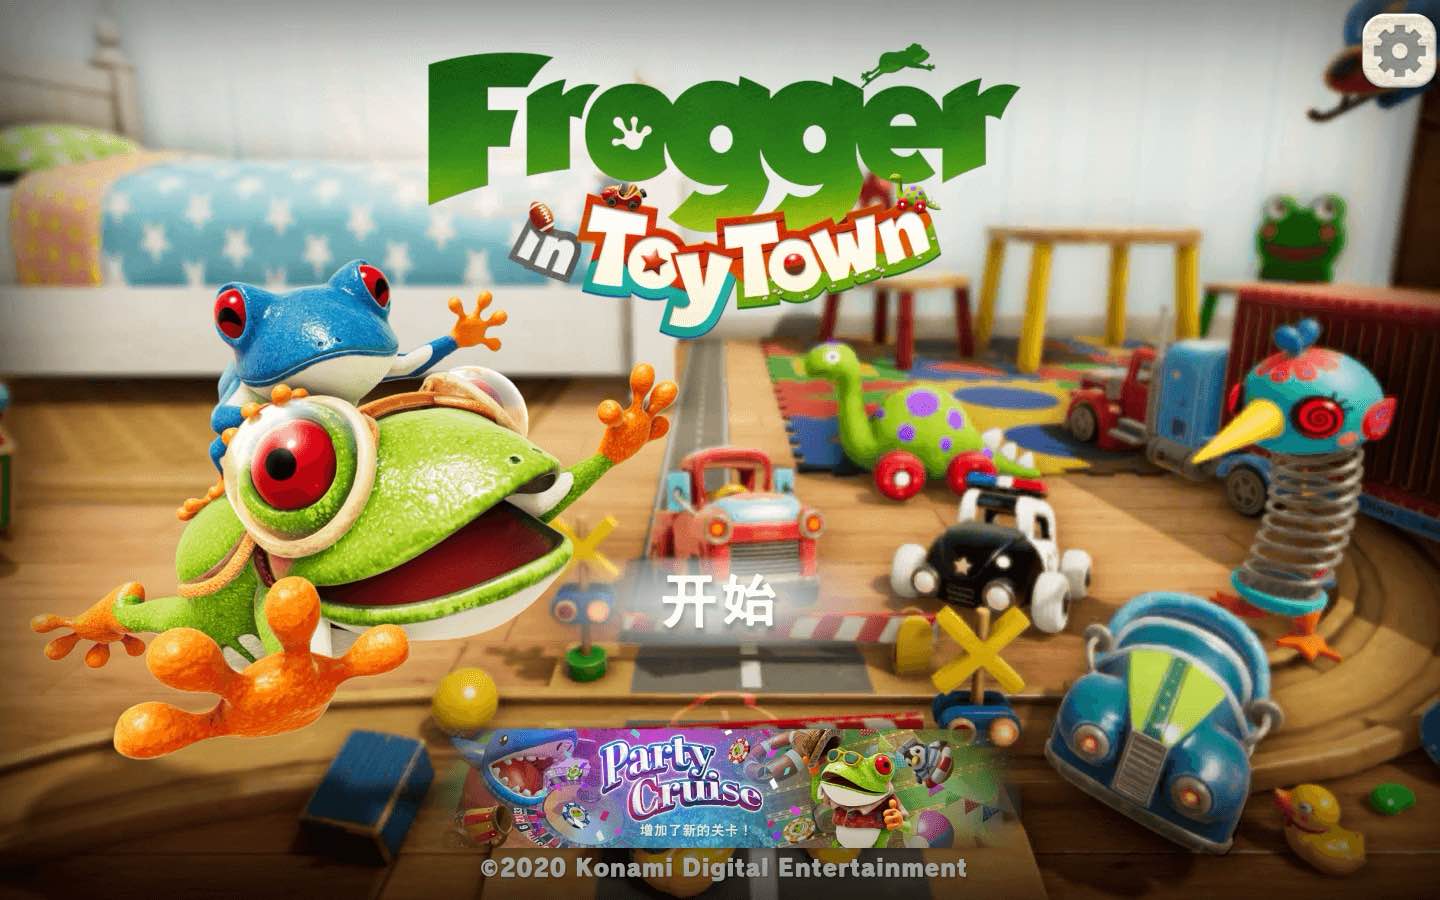 青蛙过街 for Mac Frogger in Toy Town v1.6.1 中文原生版 苹果电脑